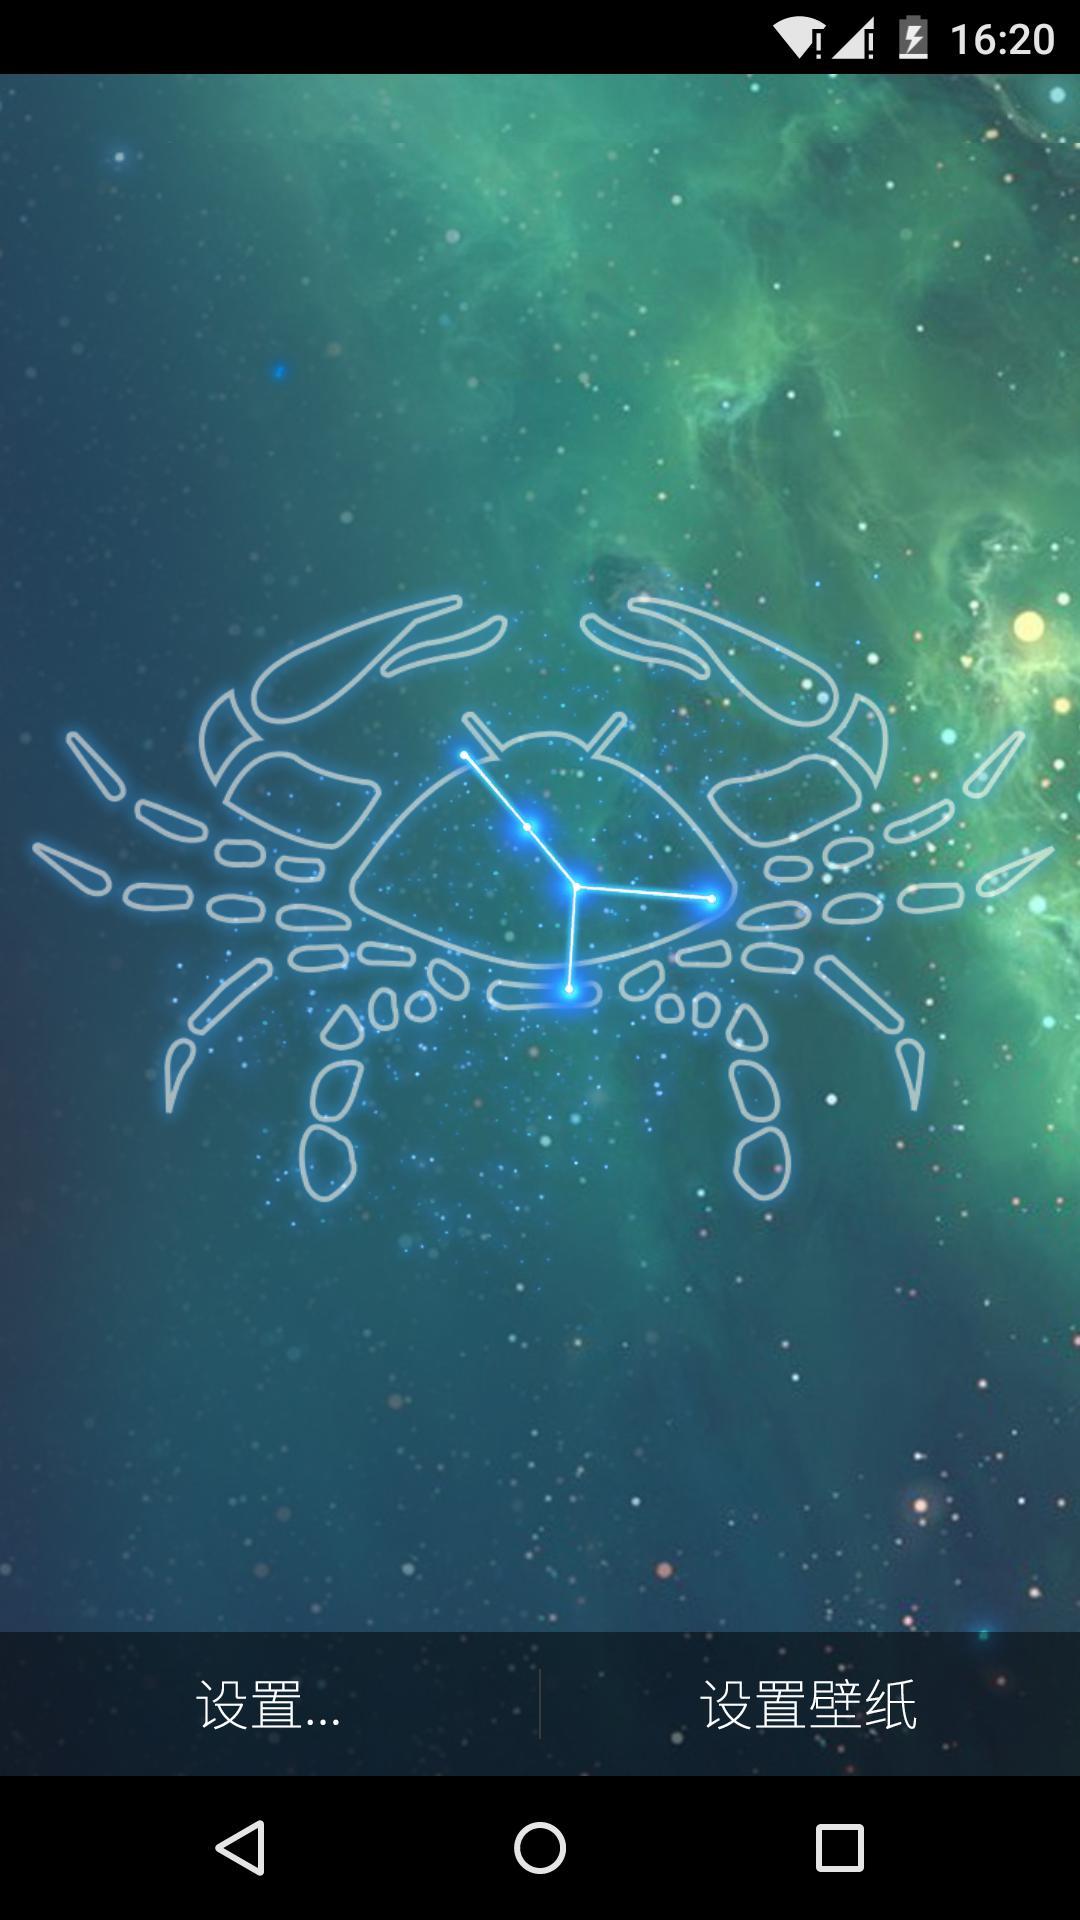 十二星座巨蟹座图片素材-编号17084818-图行天下